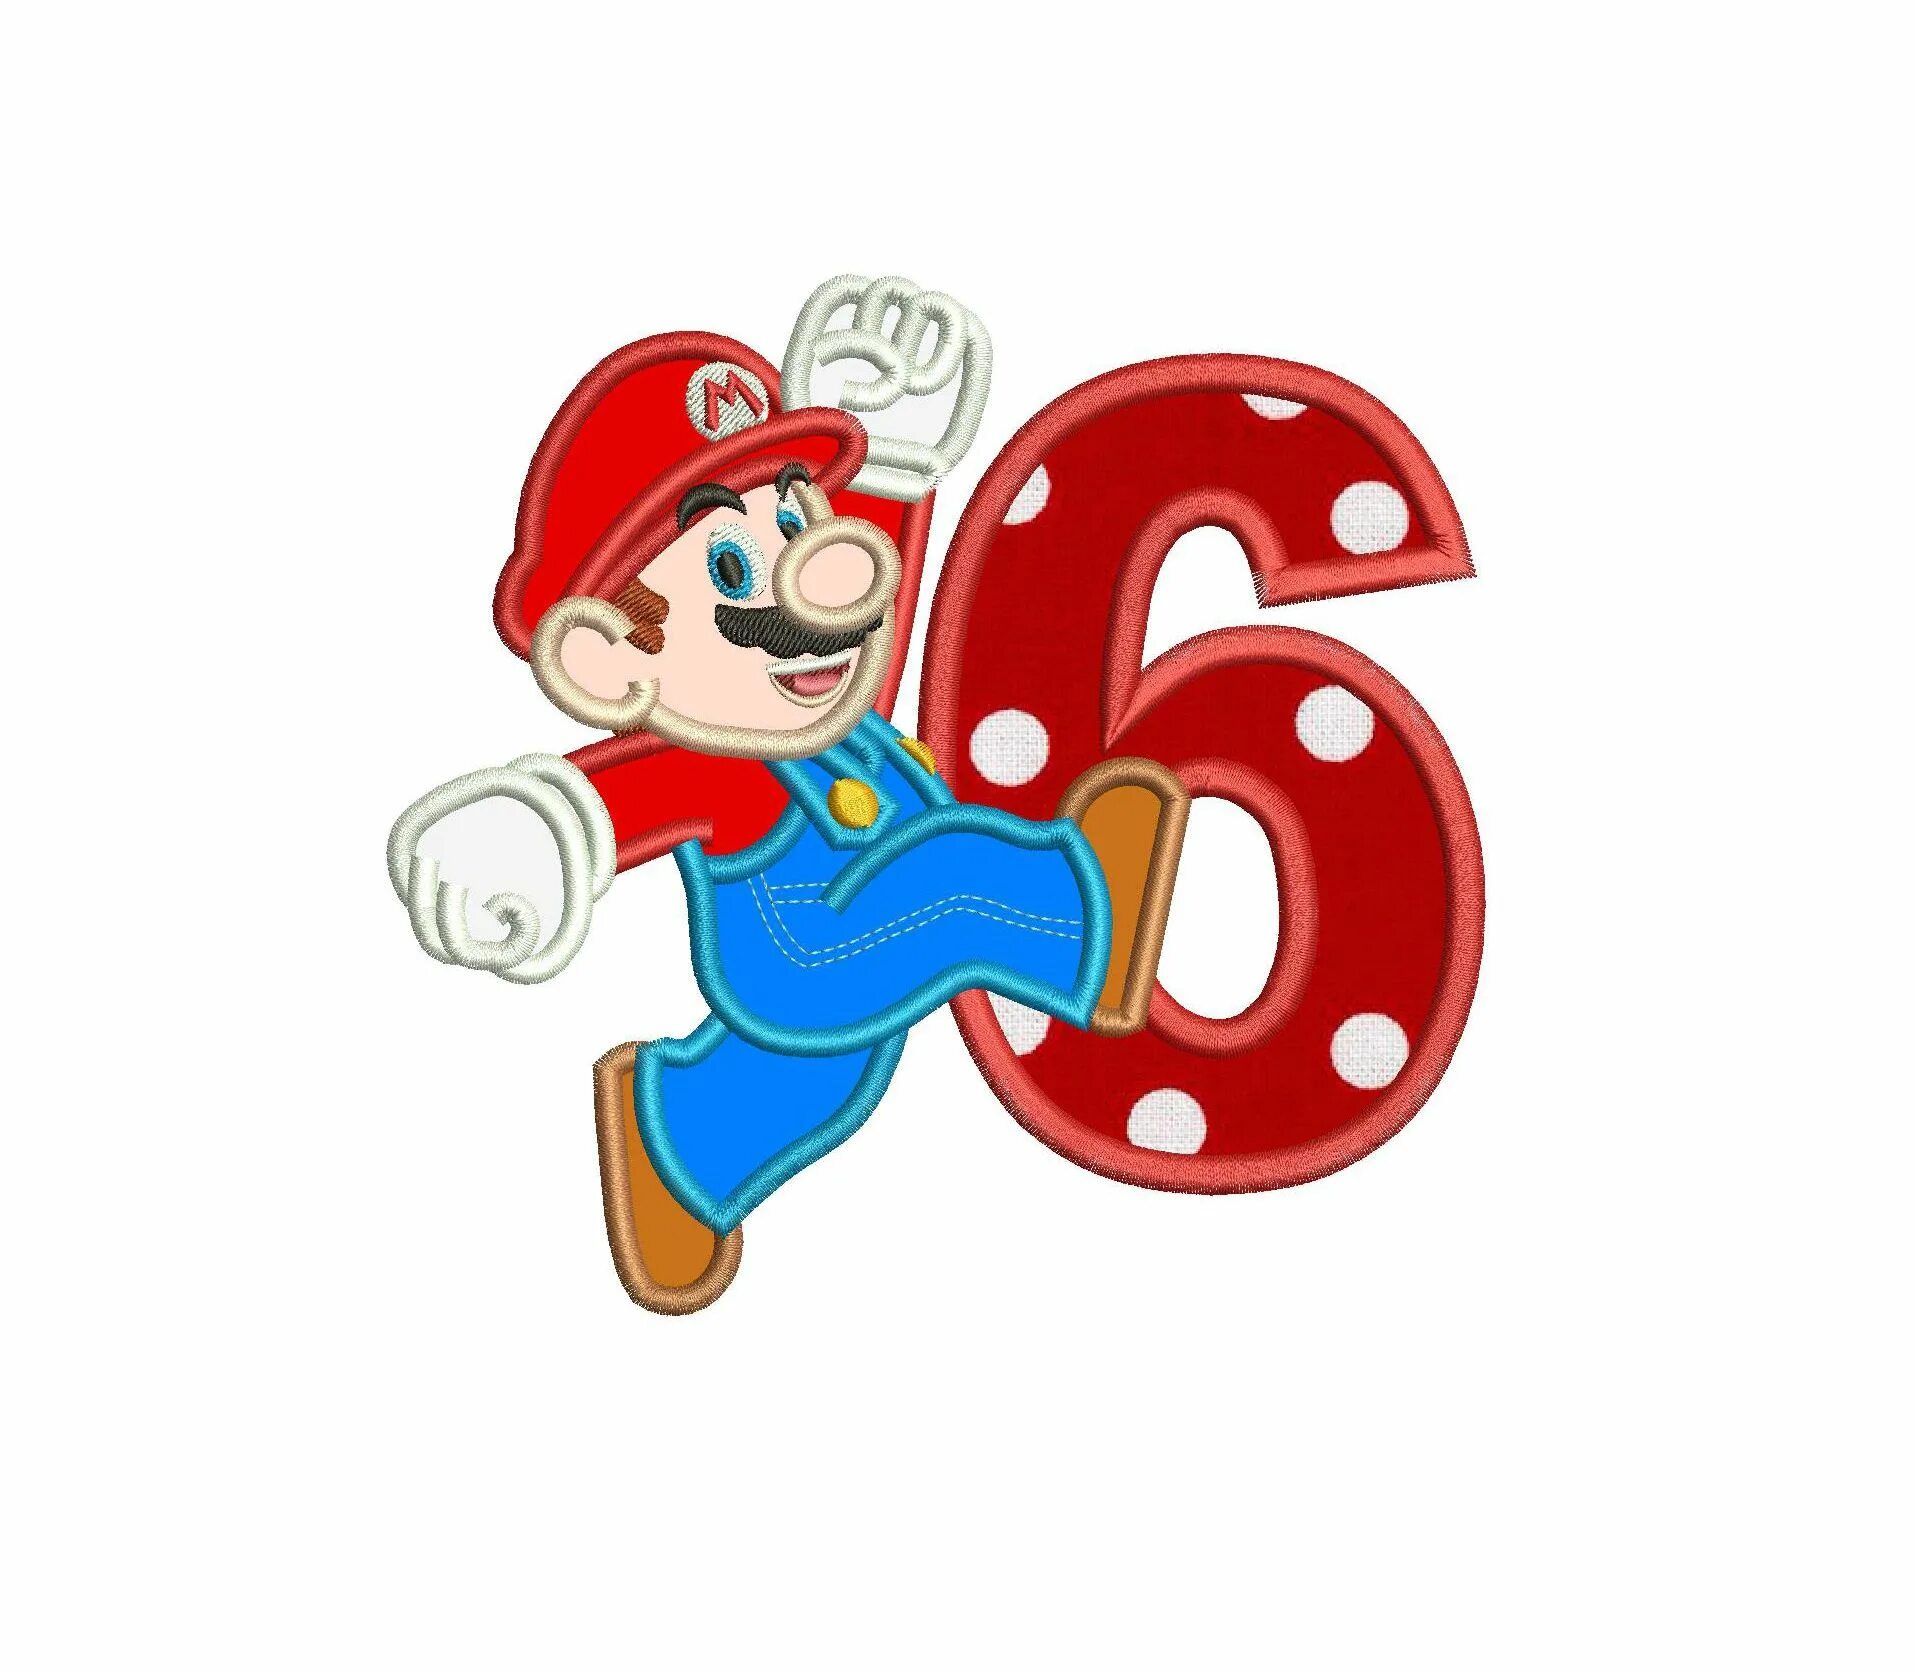 Super mario 6. Марио 6. Цифра 5 в стиле Марио. Супер Марио цифра 6. Цифры в стиле Марио.